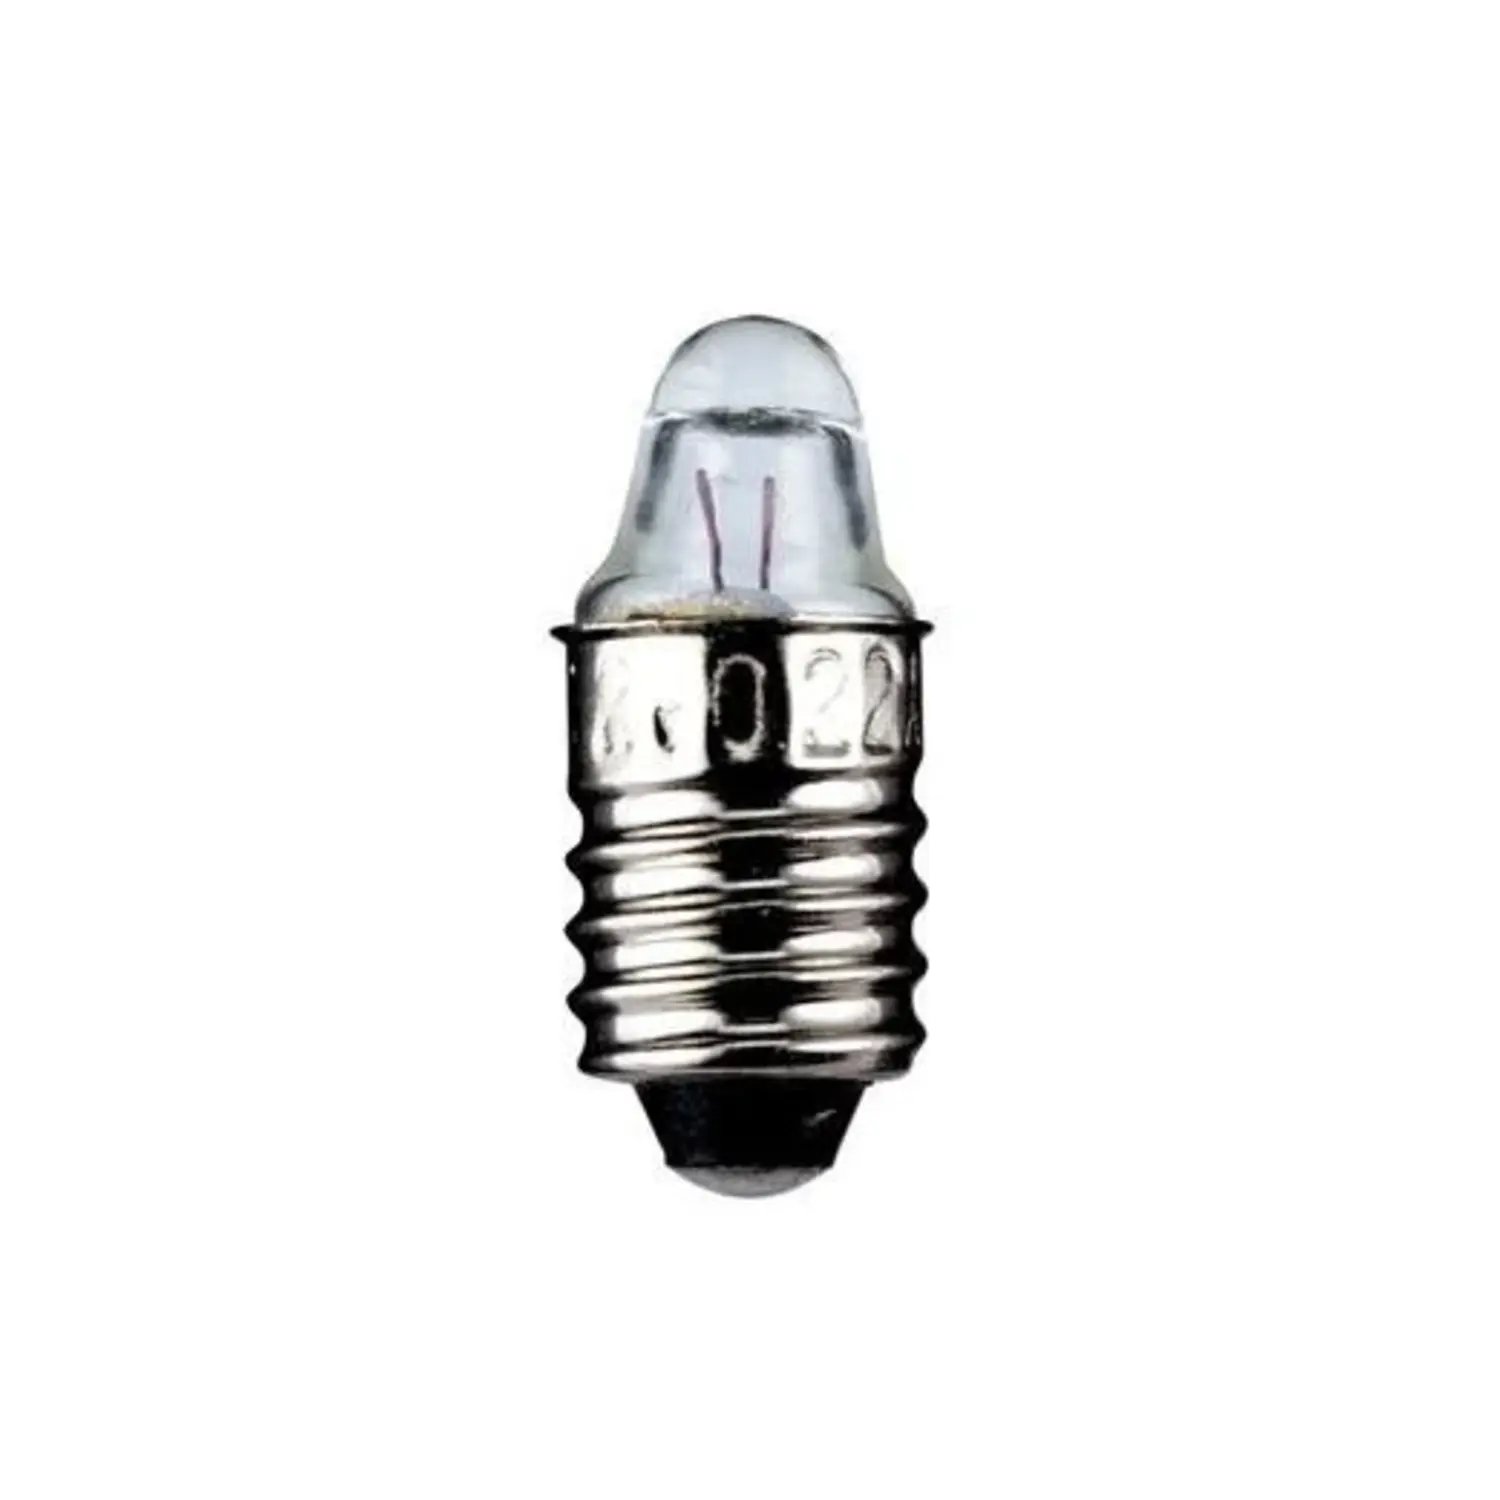 immagine del prodotto lampadina a faretto appuntita miniatura modellismo e10 0,25 watt 2,5 volt